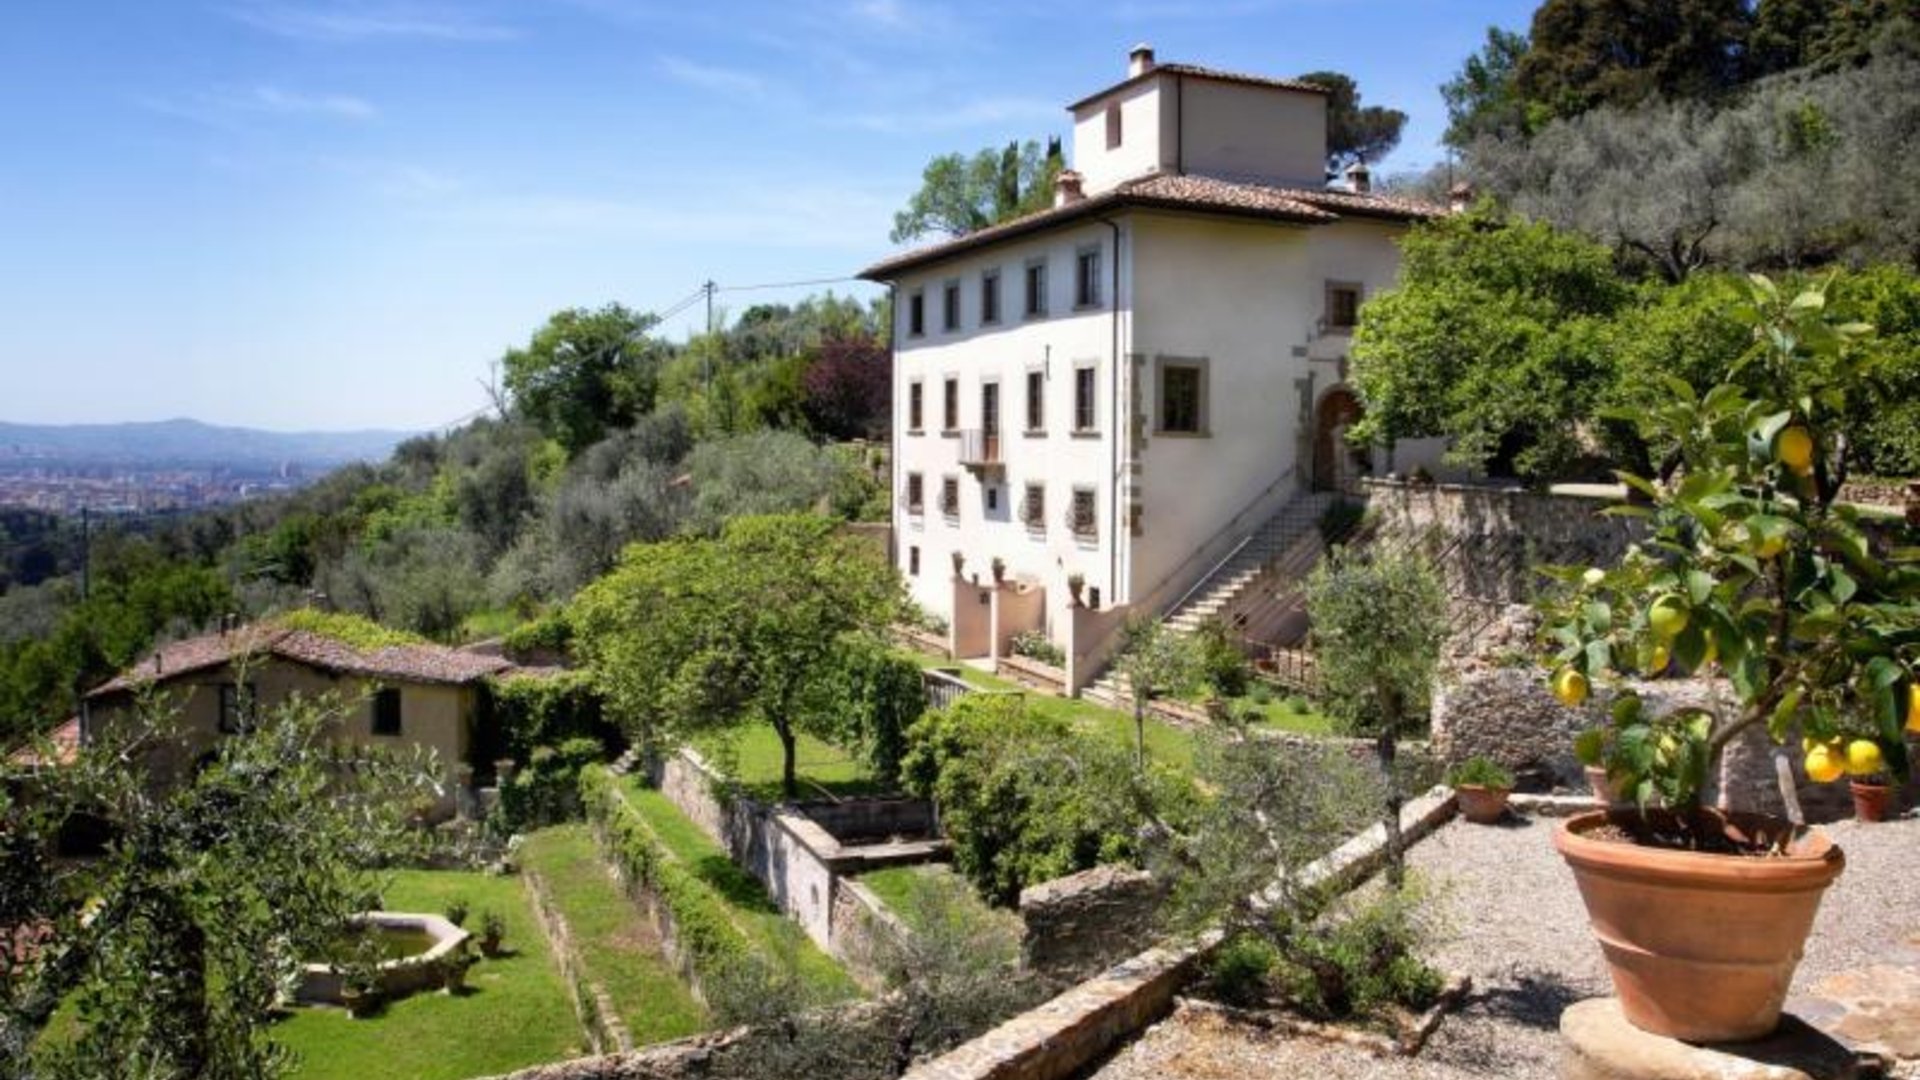 Villa Collalto, Near Florence, Italy